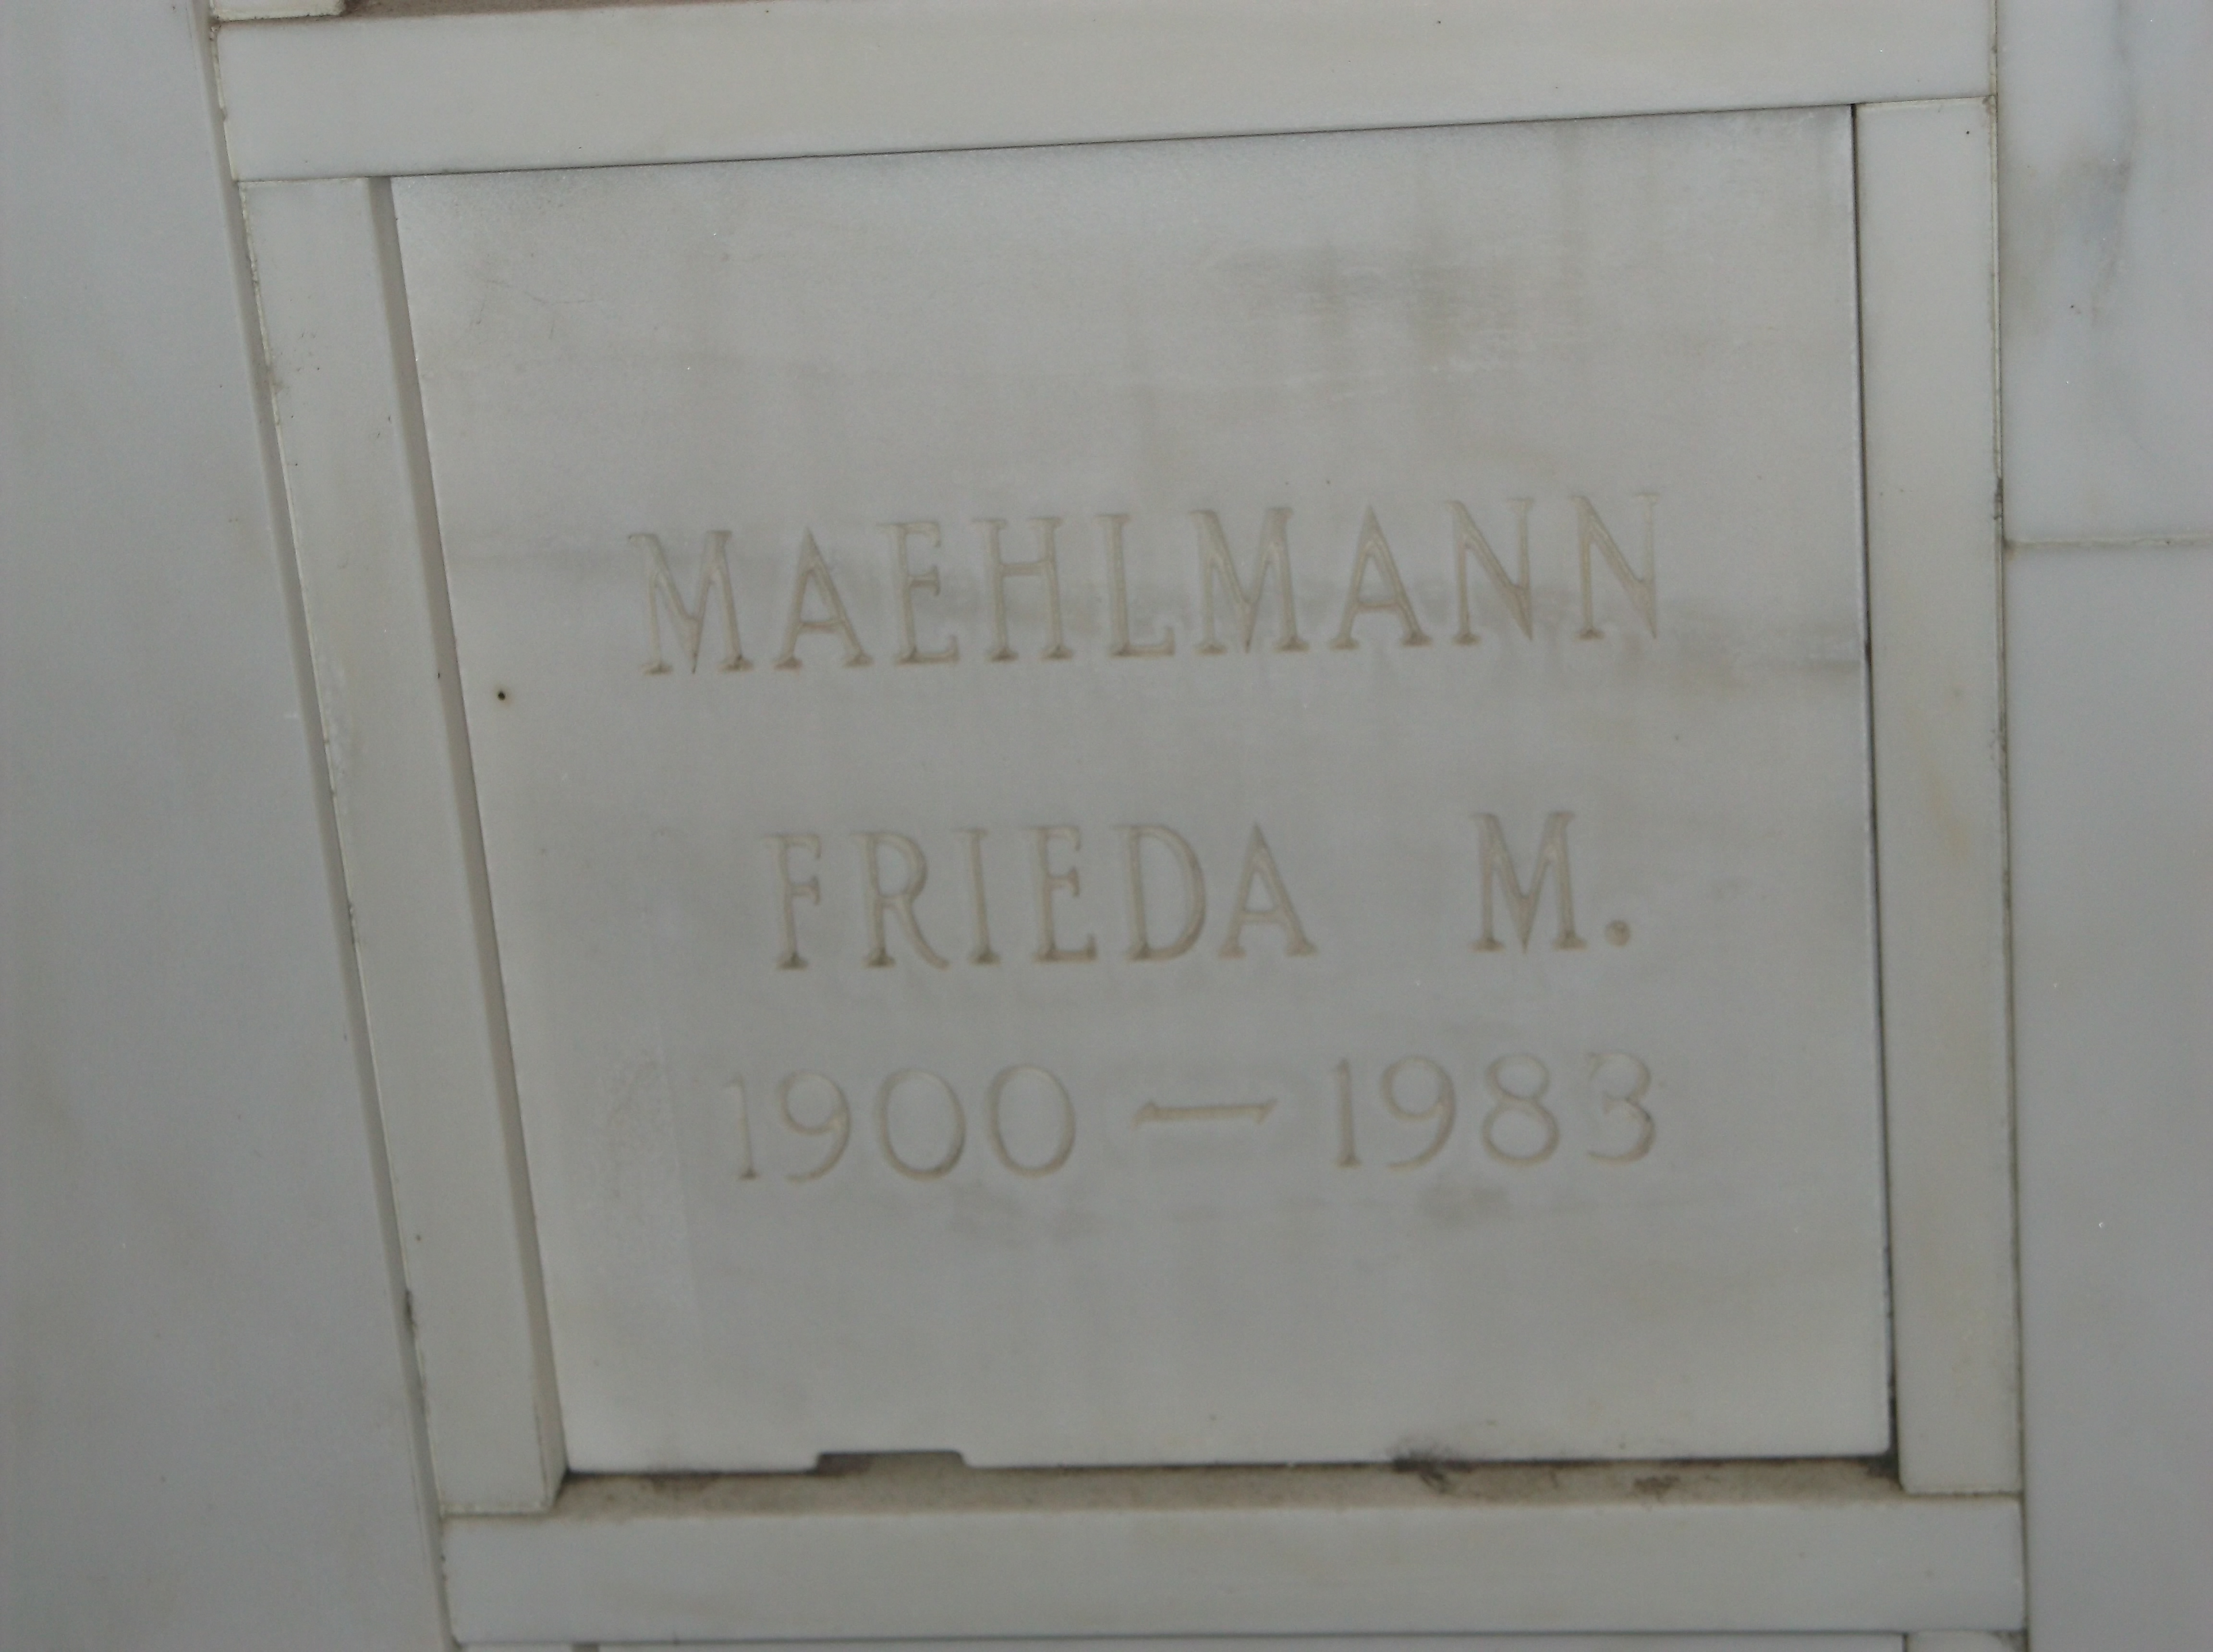 Frieda M Maehlmann